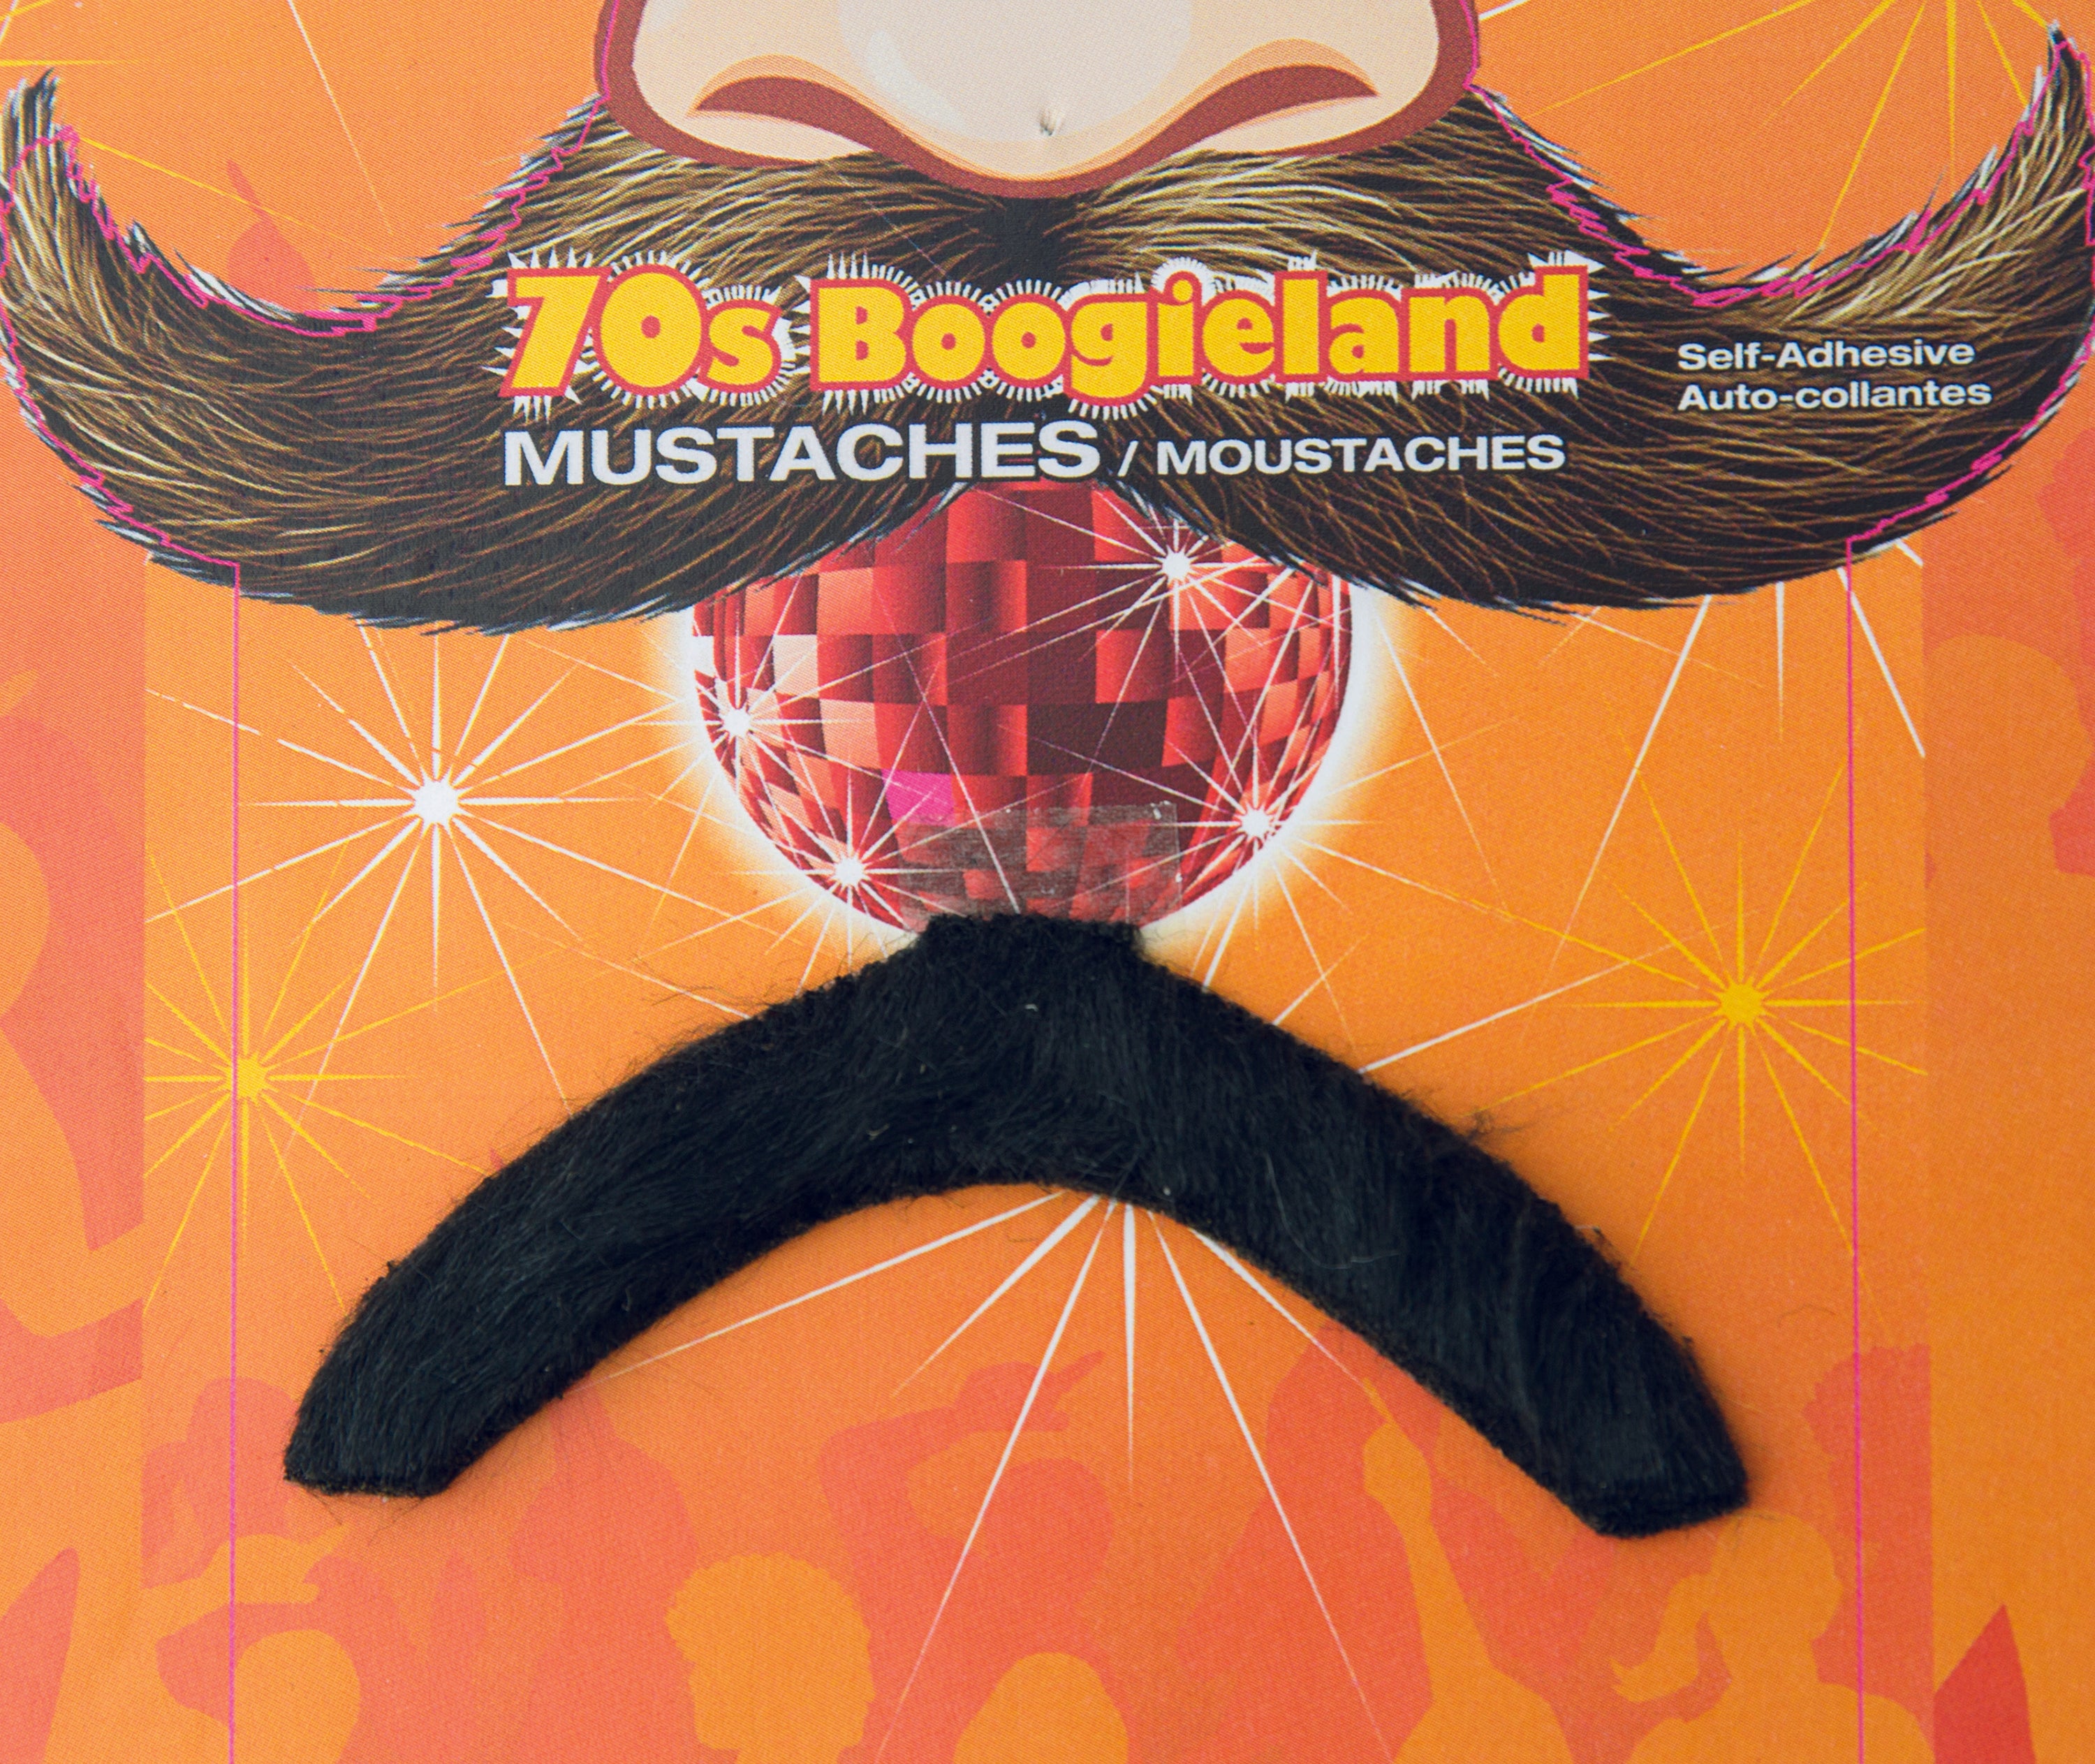 70's Boogieland Mustache